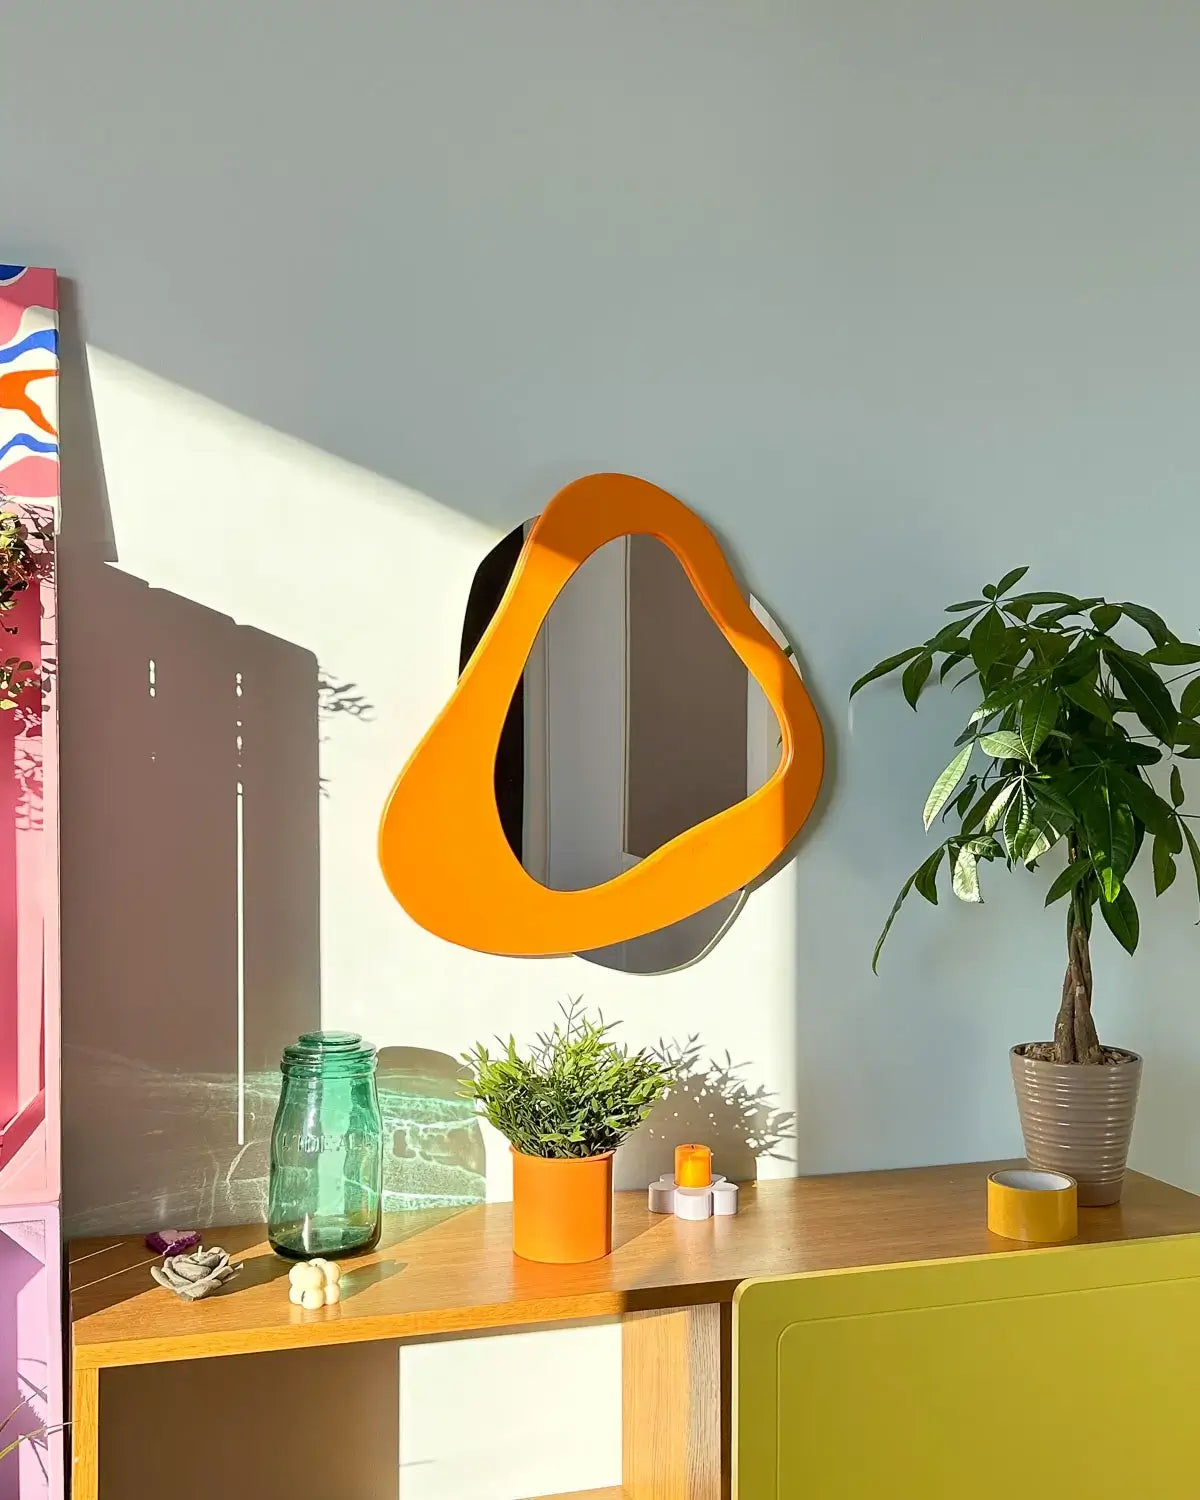 Miroir mural Sens de Vue de LinorHome, avec une forme organique asymétrique et un cadre orange vif, ajoutant une touche moderne et élégante à la pièce